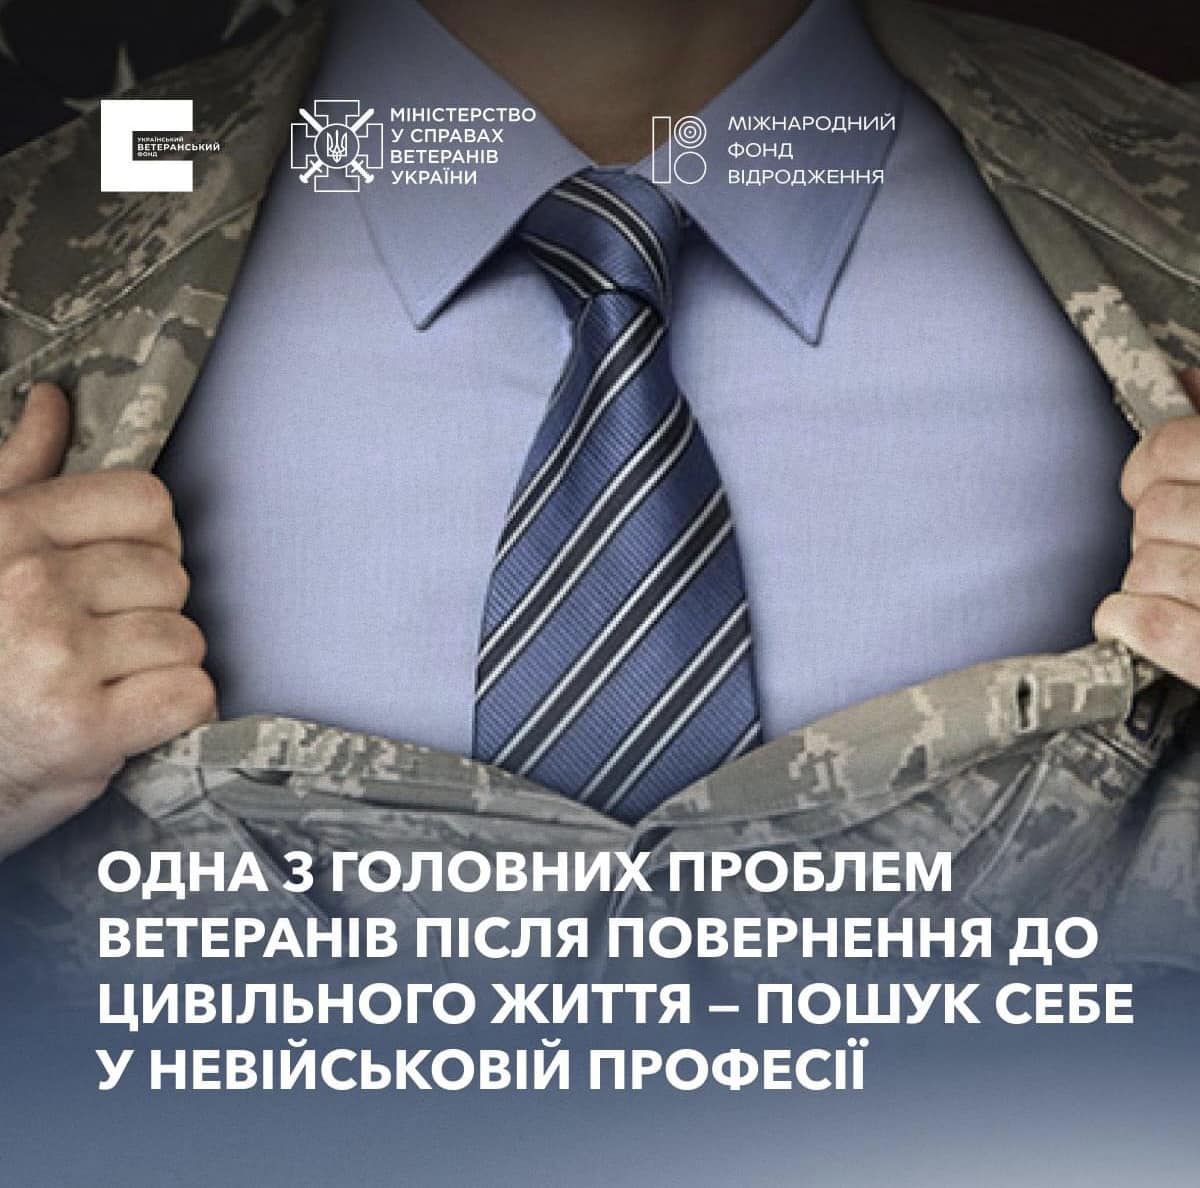 Працевлаштування ветеранів: як покращити ситуацію в Україні